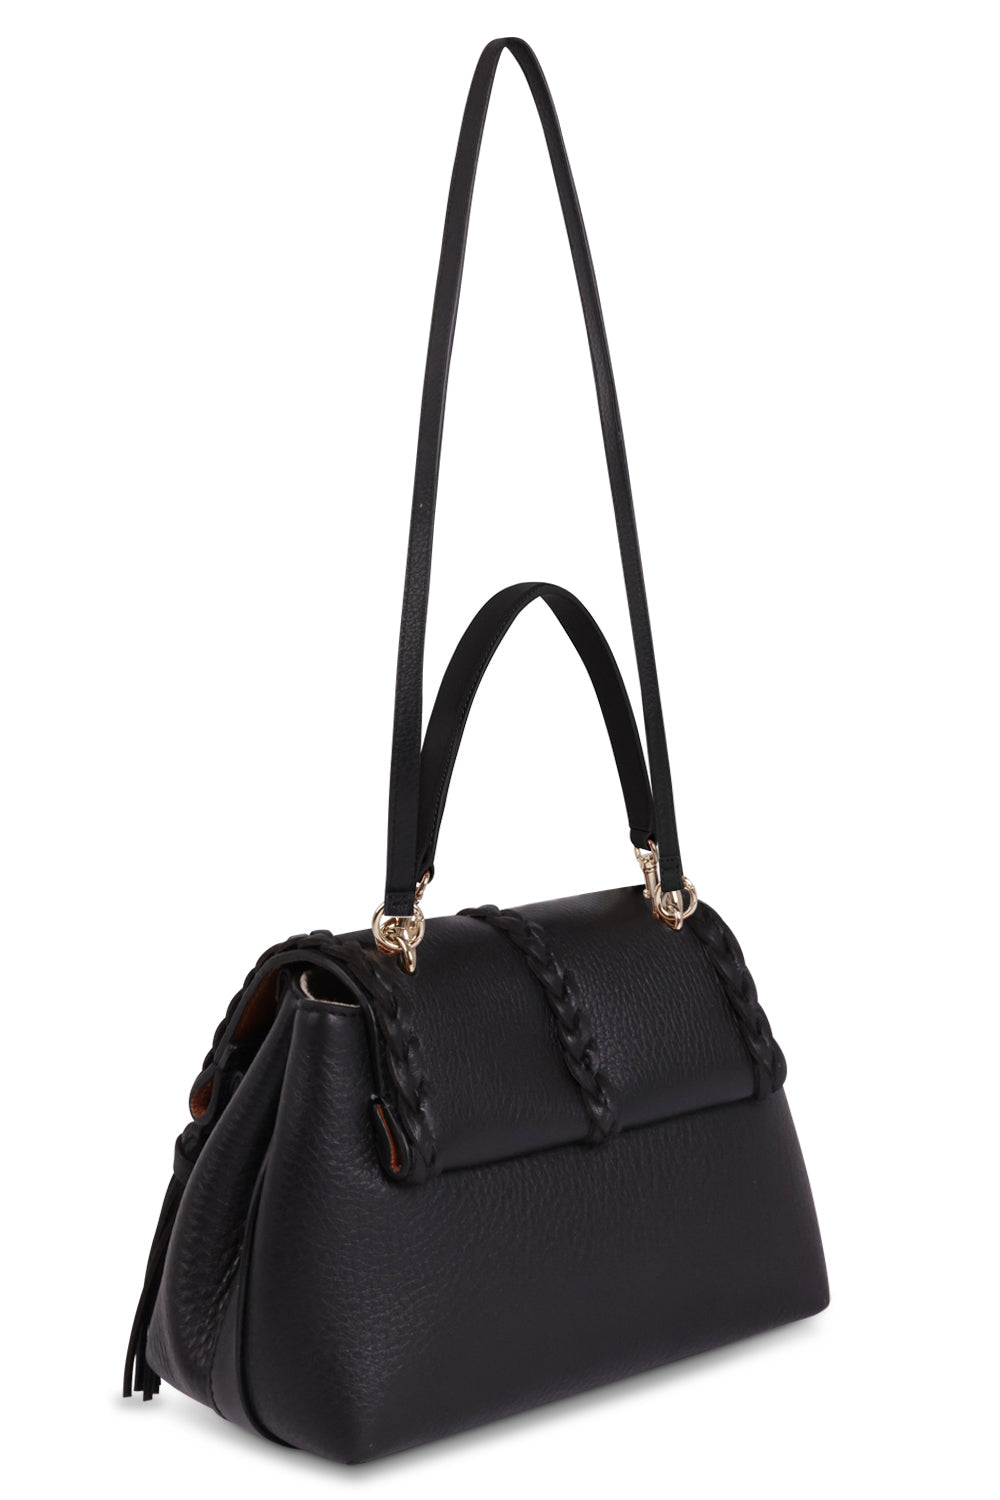 CHLOE BAGS Black Small Penelope Bag | Black